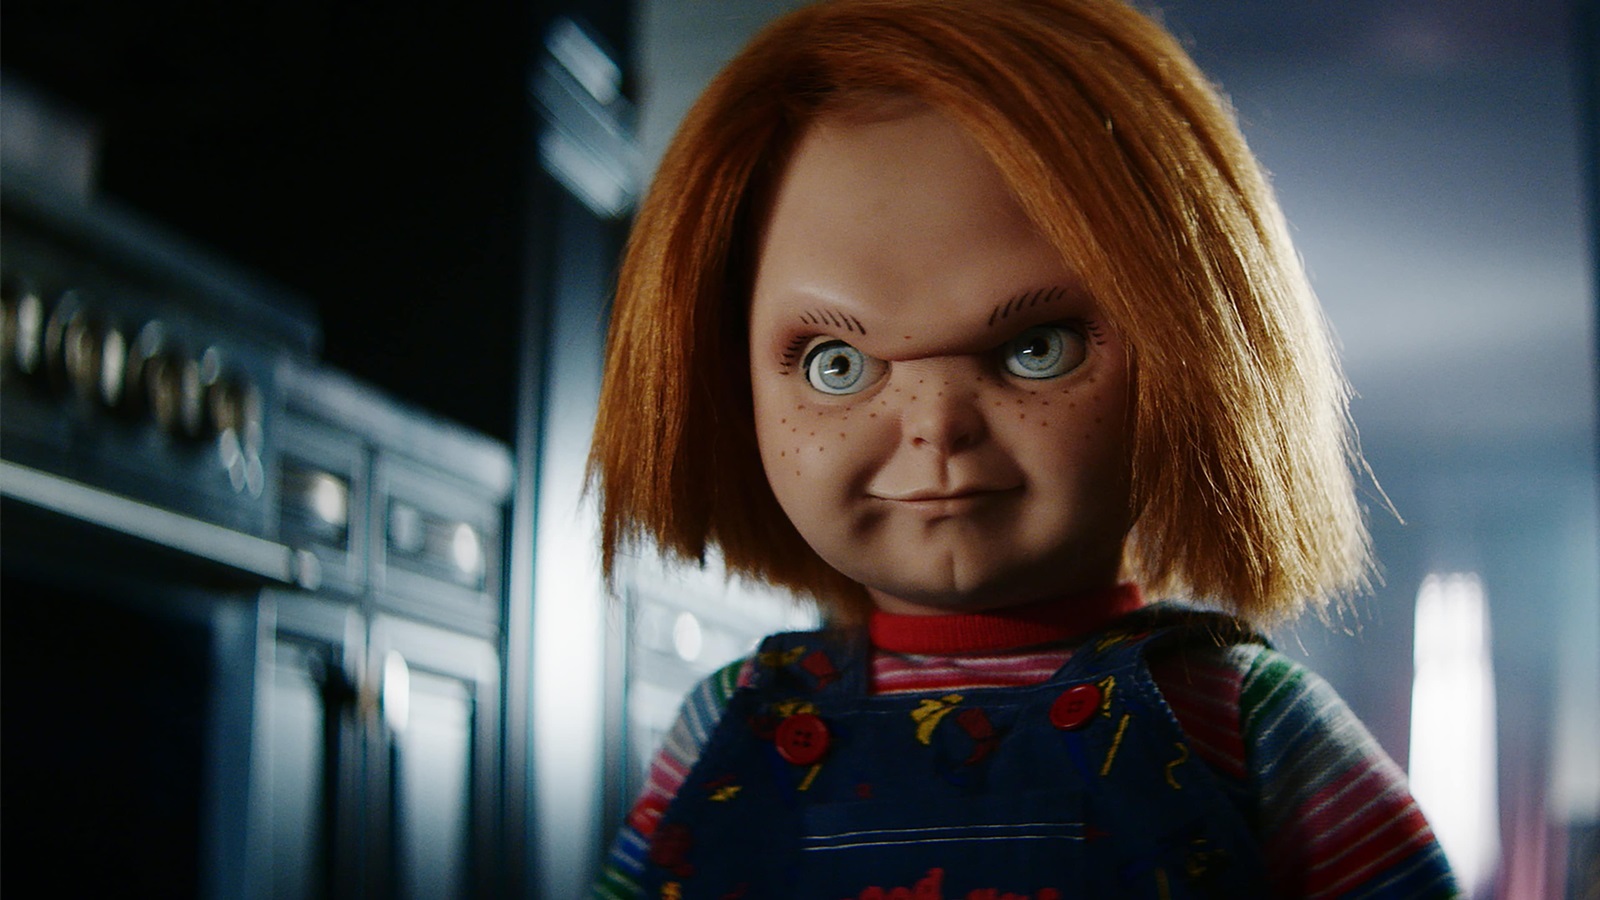 L'esorcista - Il Credente: Chucky commenta il trailer in un divertente video online